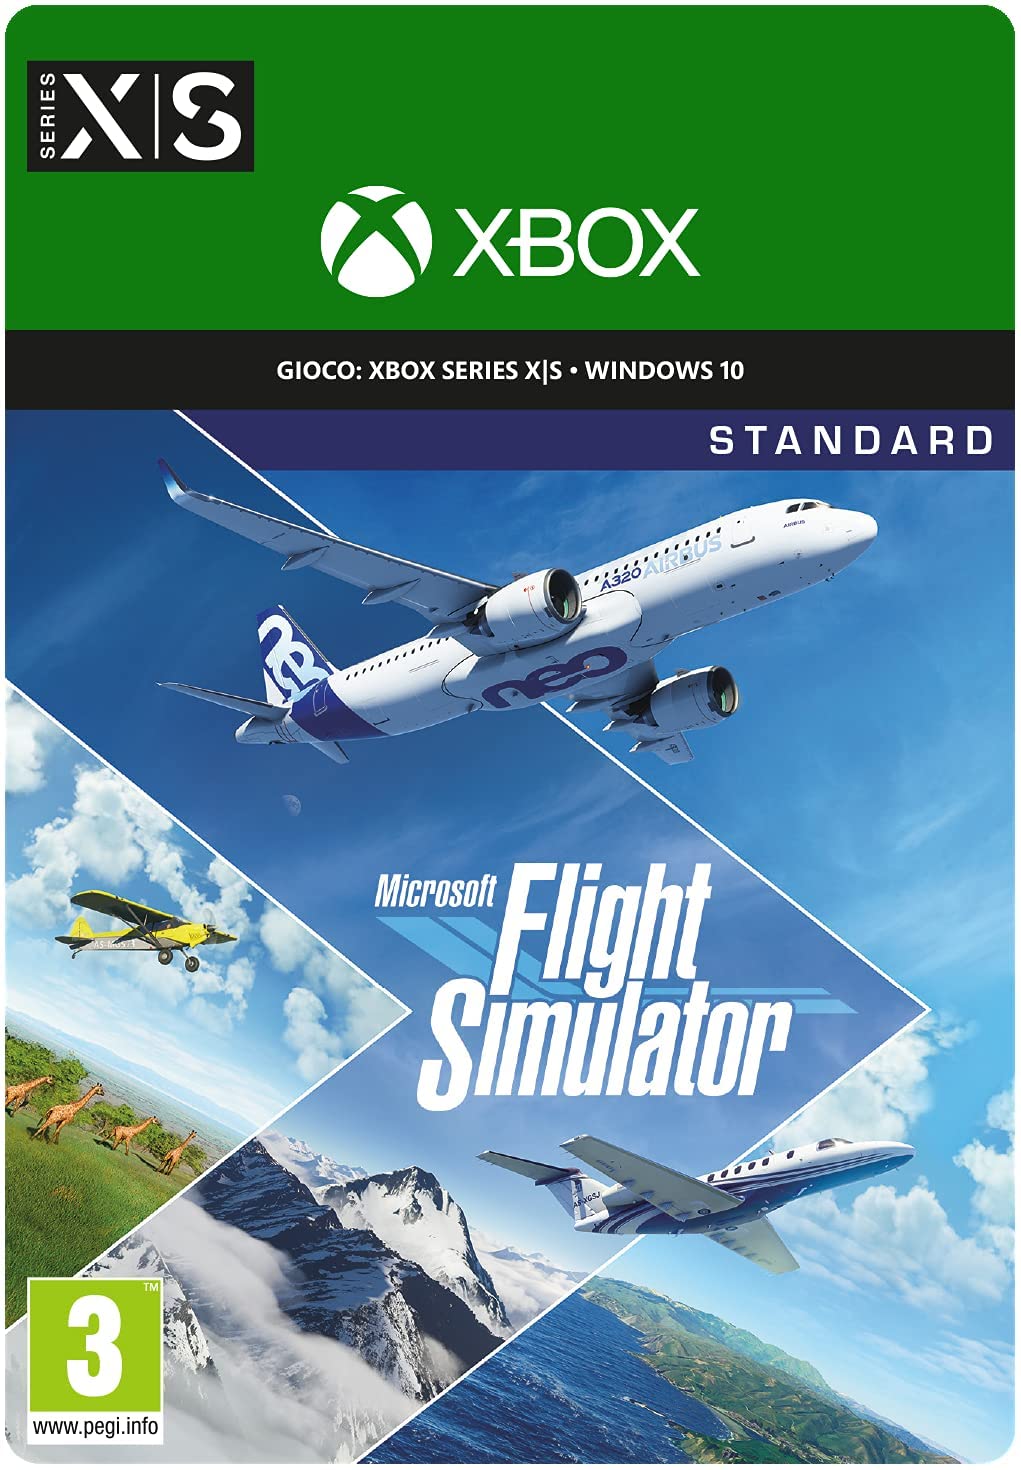 
                                    
                                Flight Simulator per Xbox Series X|S: il gioco che la next gen Microsoft si merita. La Recensione